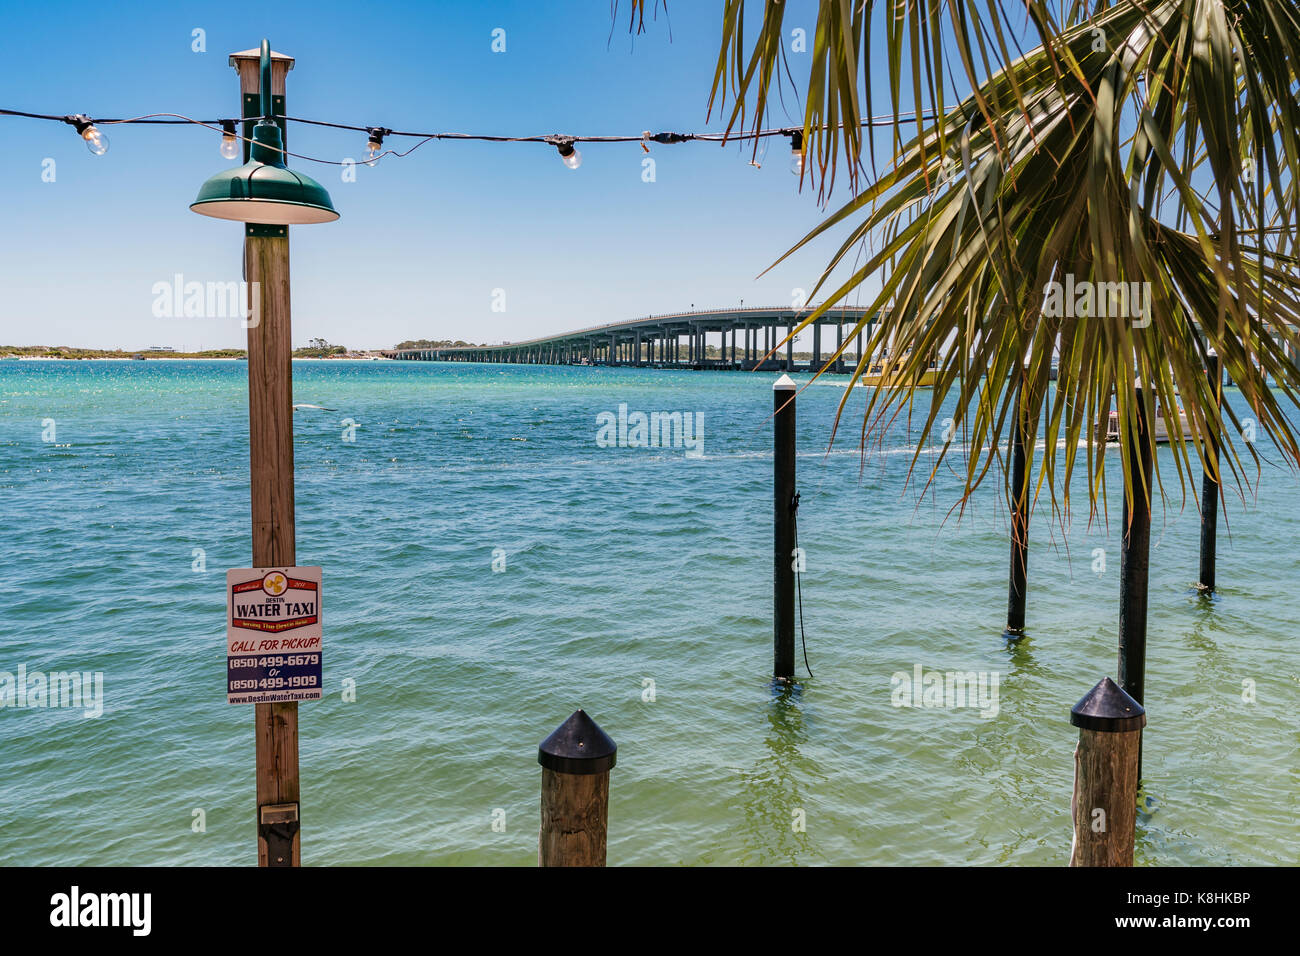 Blick von Osten passieren und die Brücke in Destin Florida von Harry's T Restaurant zeigt das Wasser Taxi festmachen an dem Harborwalk Marina. Stockfoto